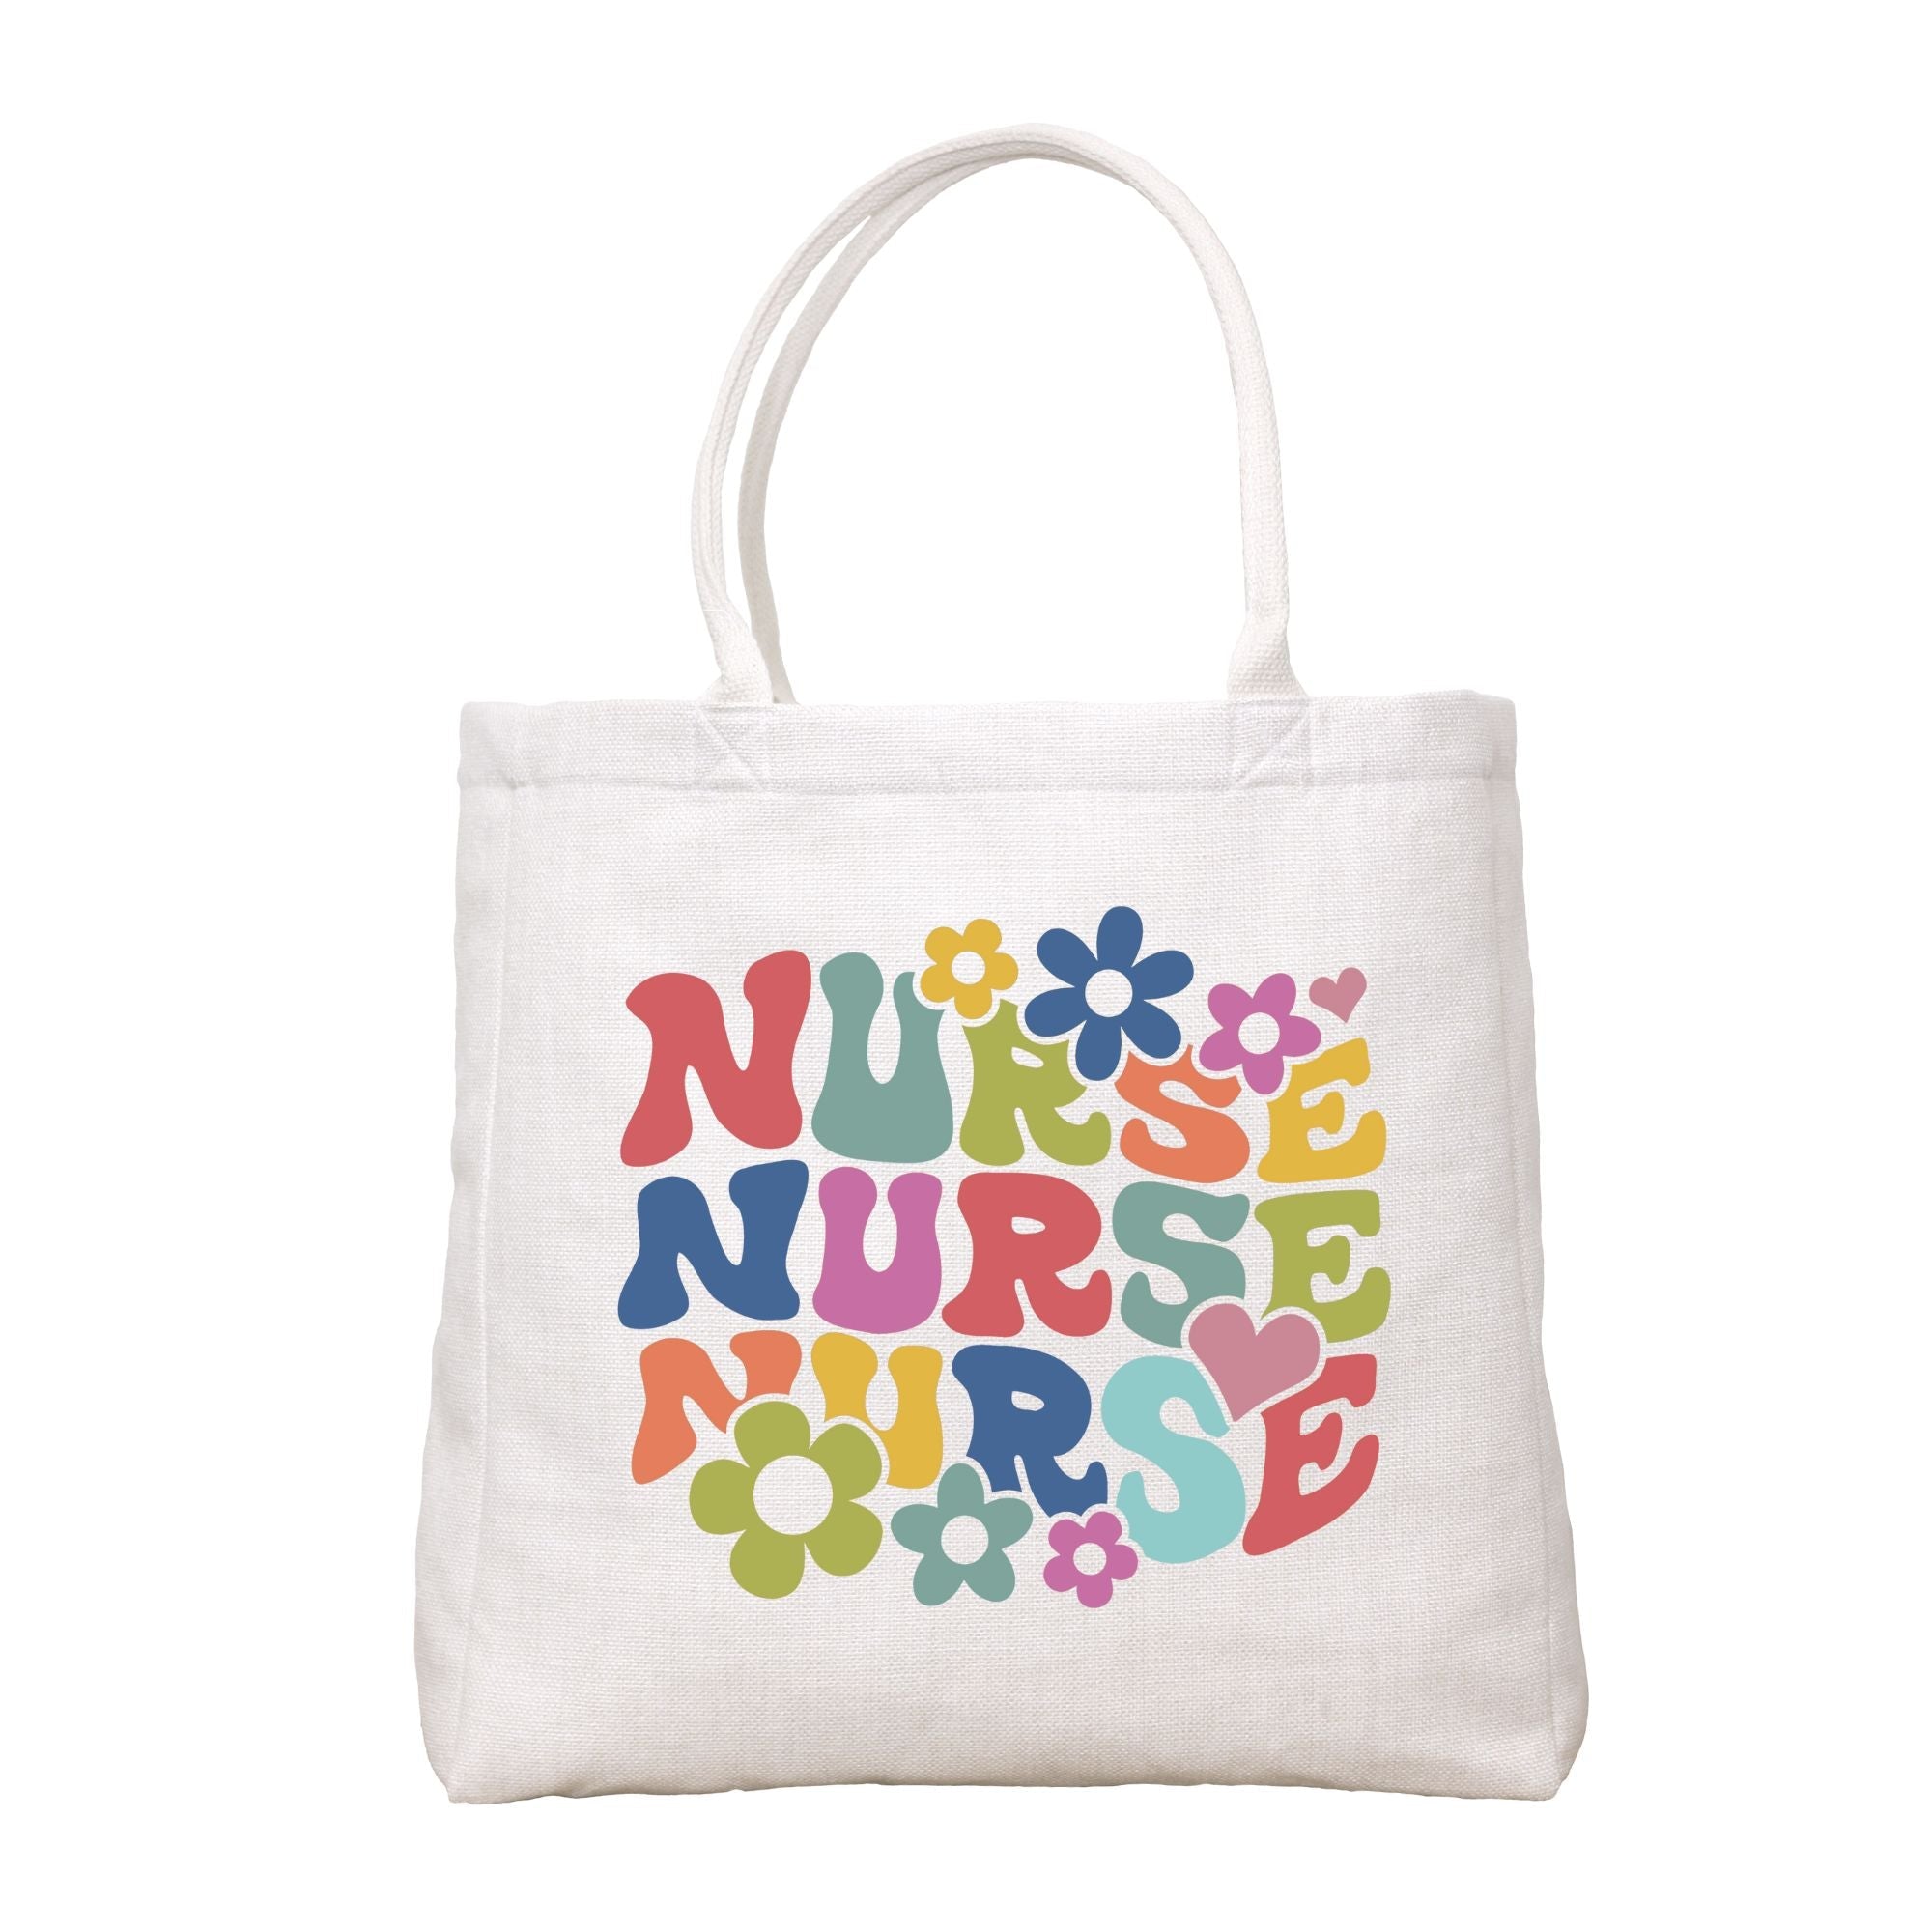 Retro Nurse Tote Bag